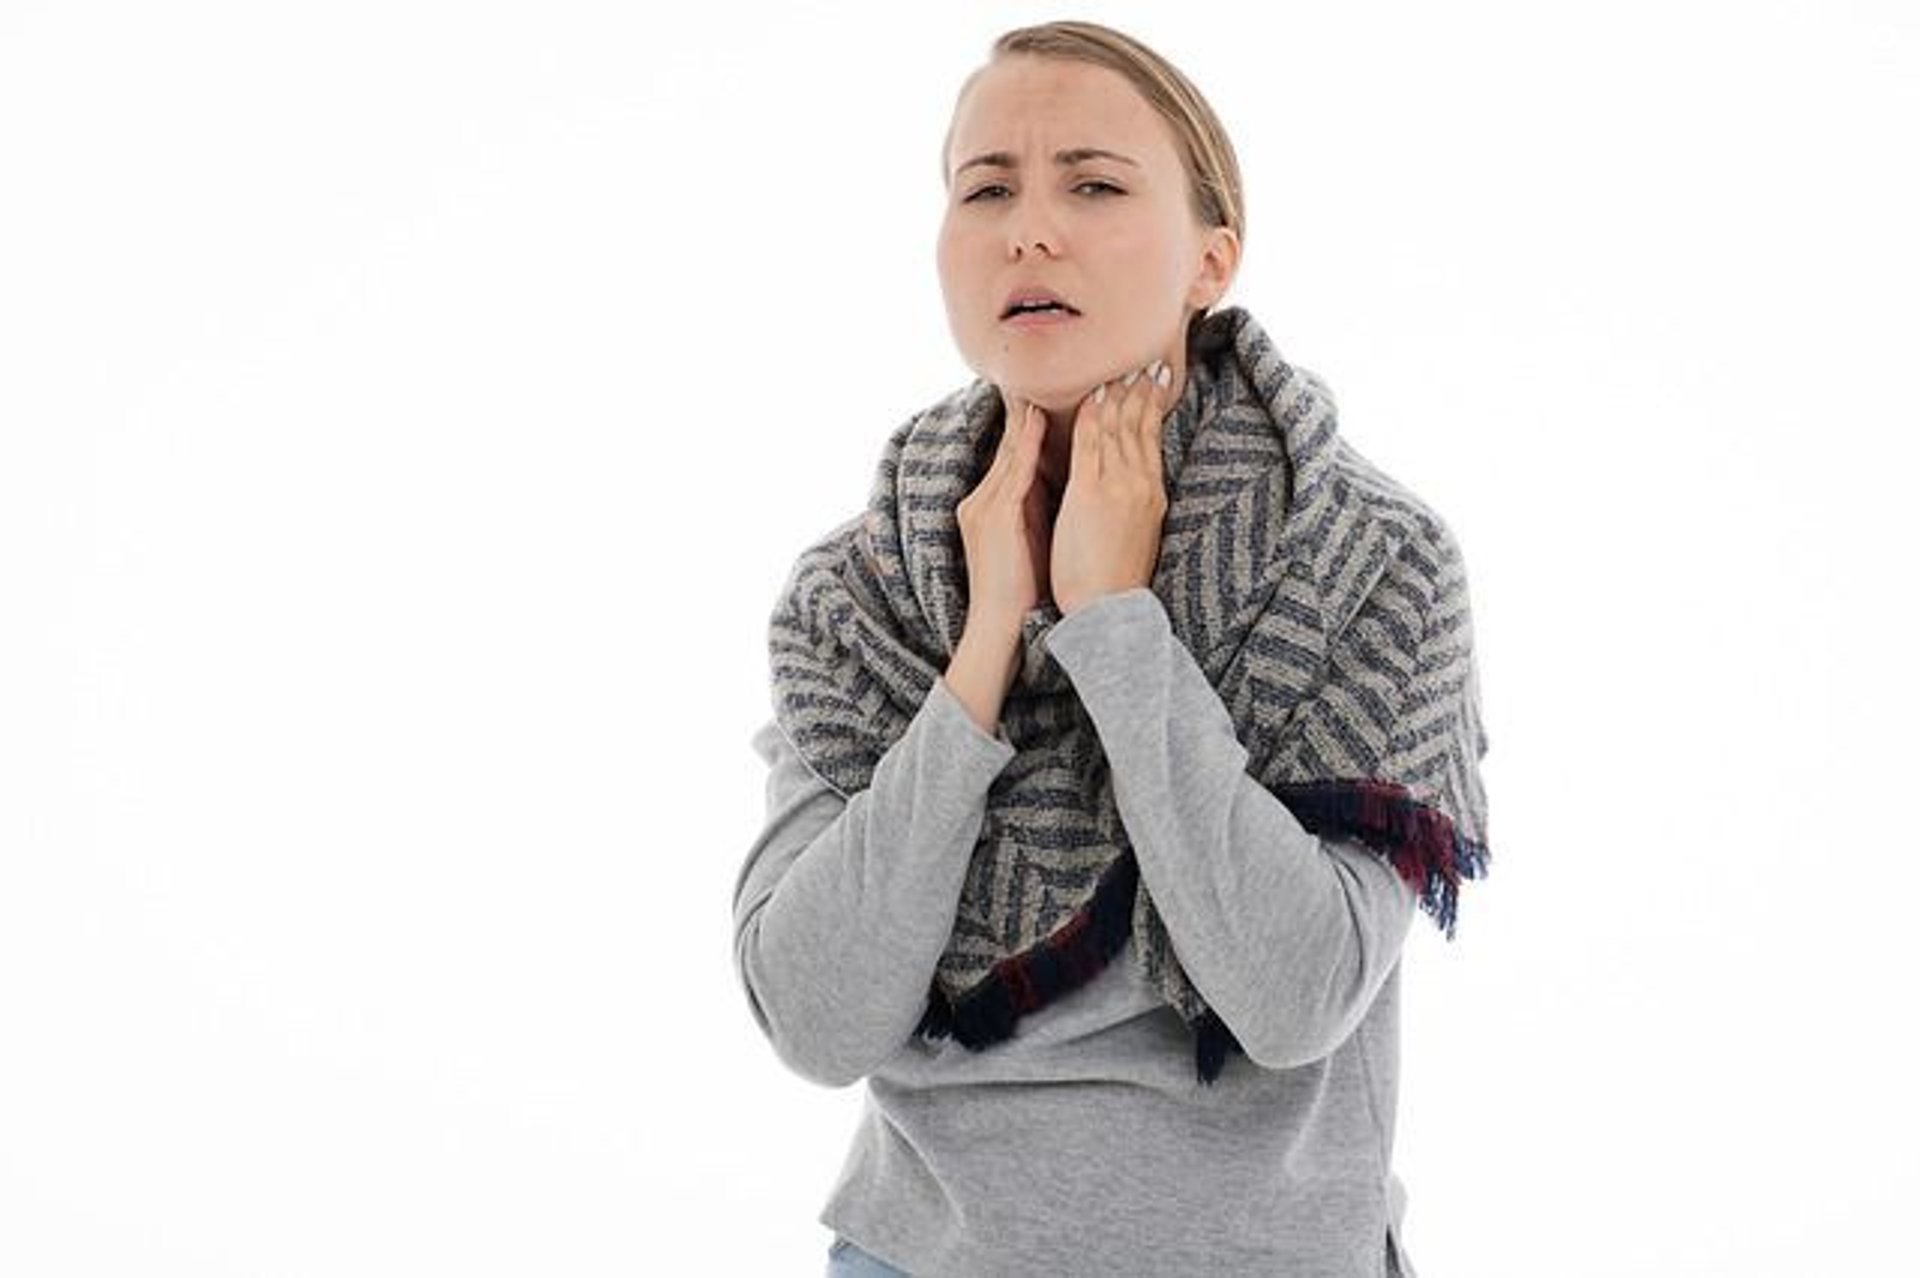 Ból gardła – przyczyny i leczenie infekcji gardła. Domowe sposoby na ból gardła